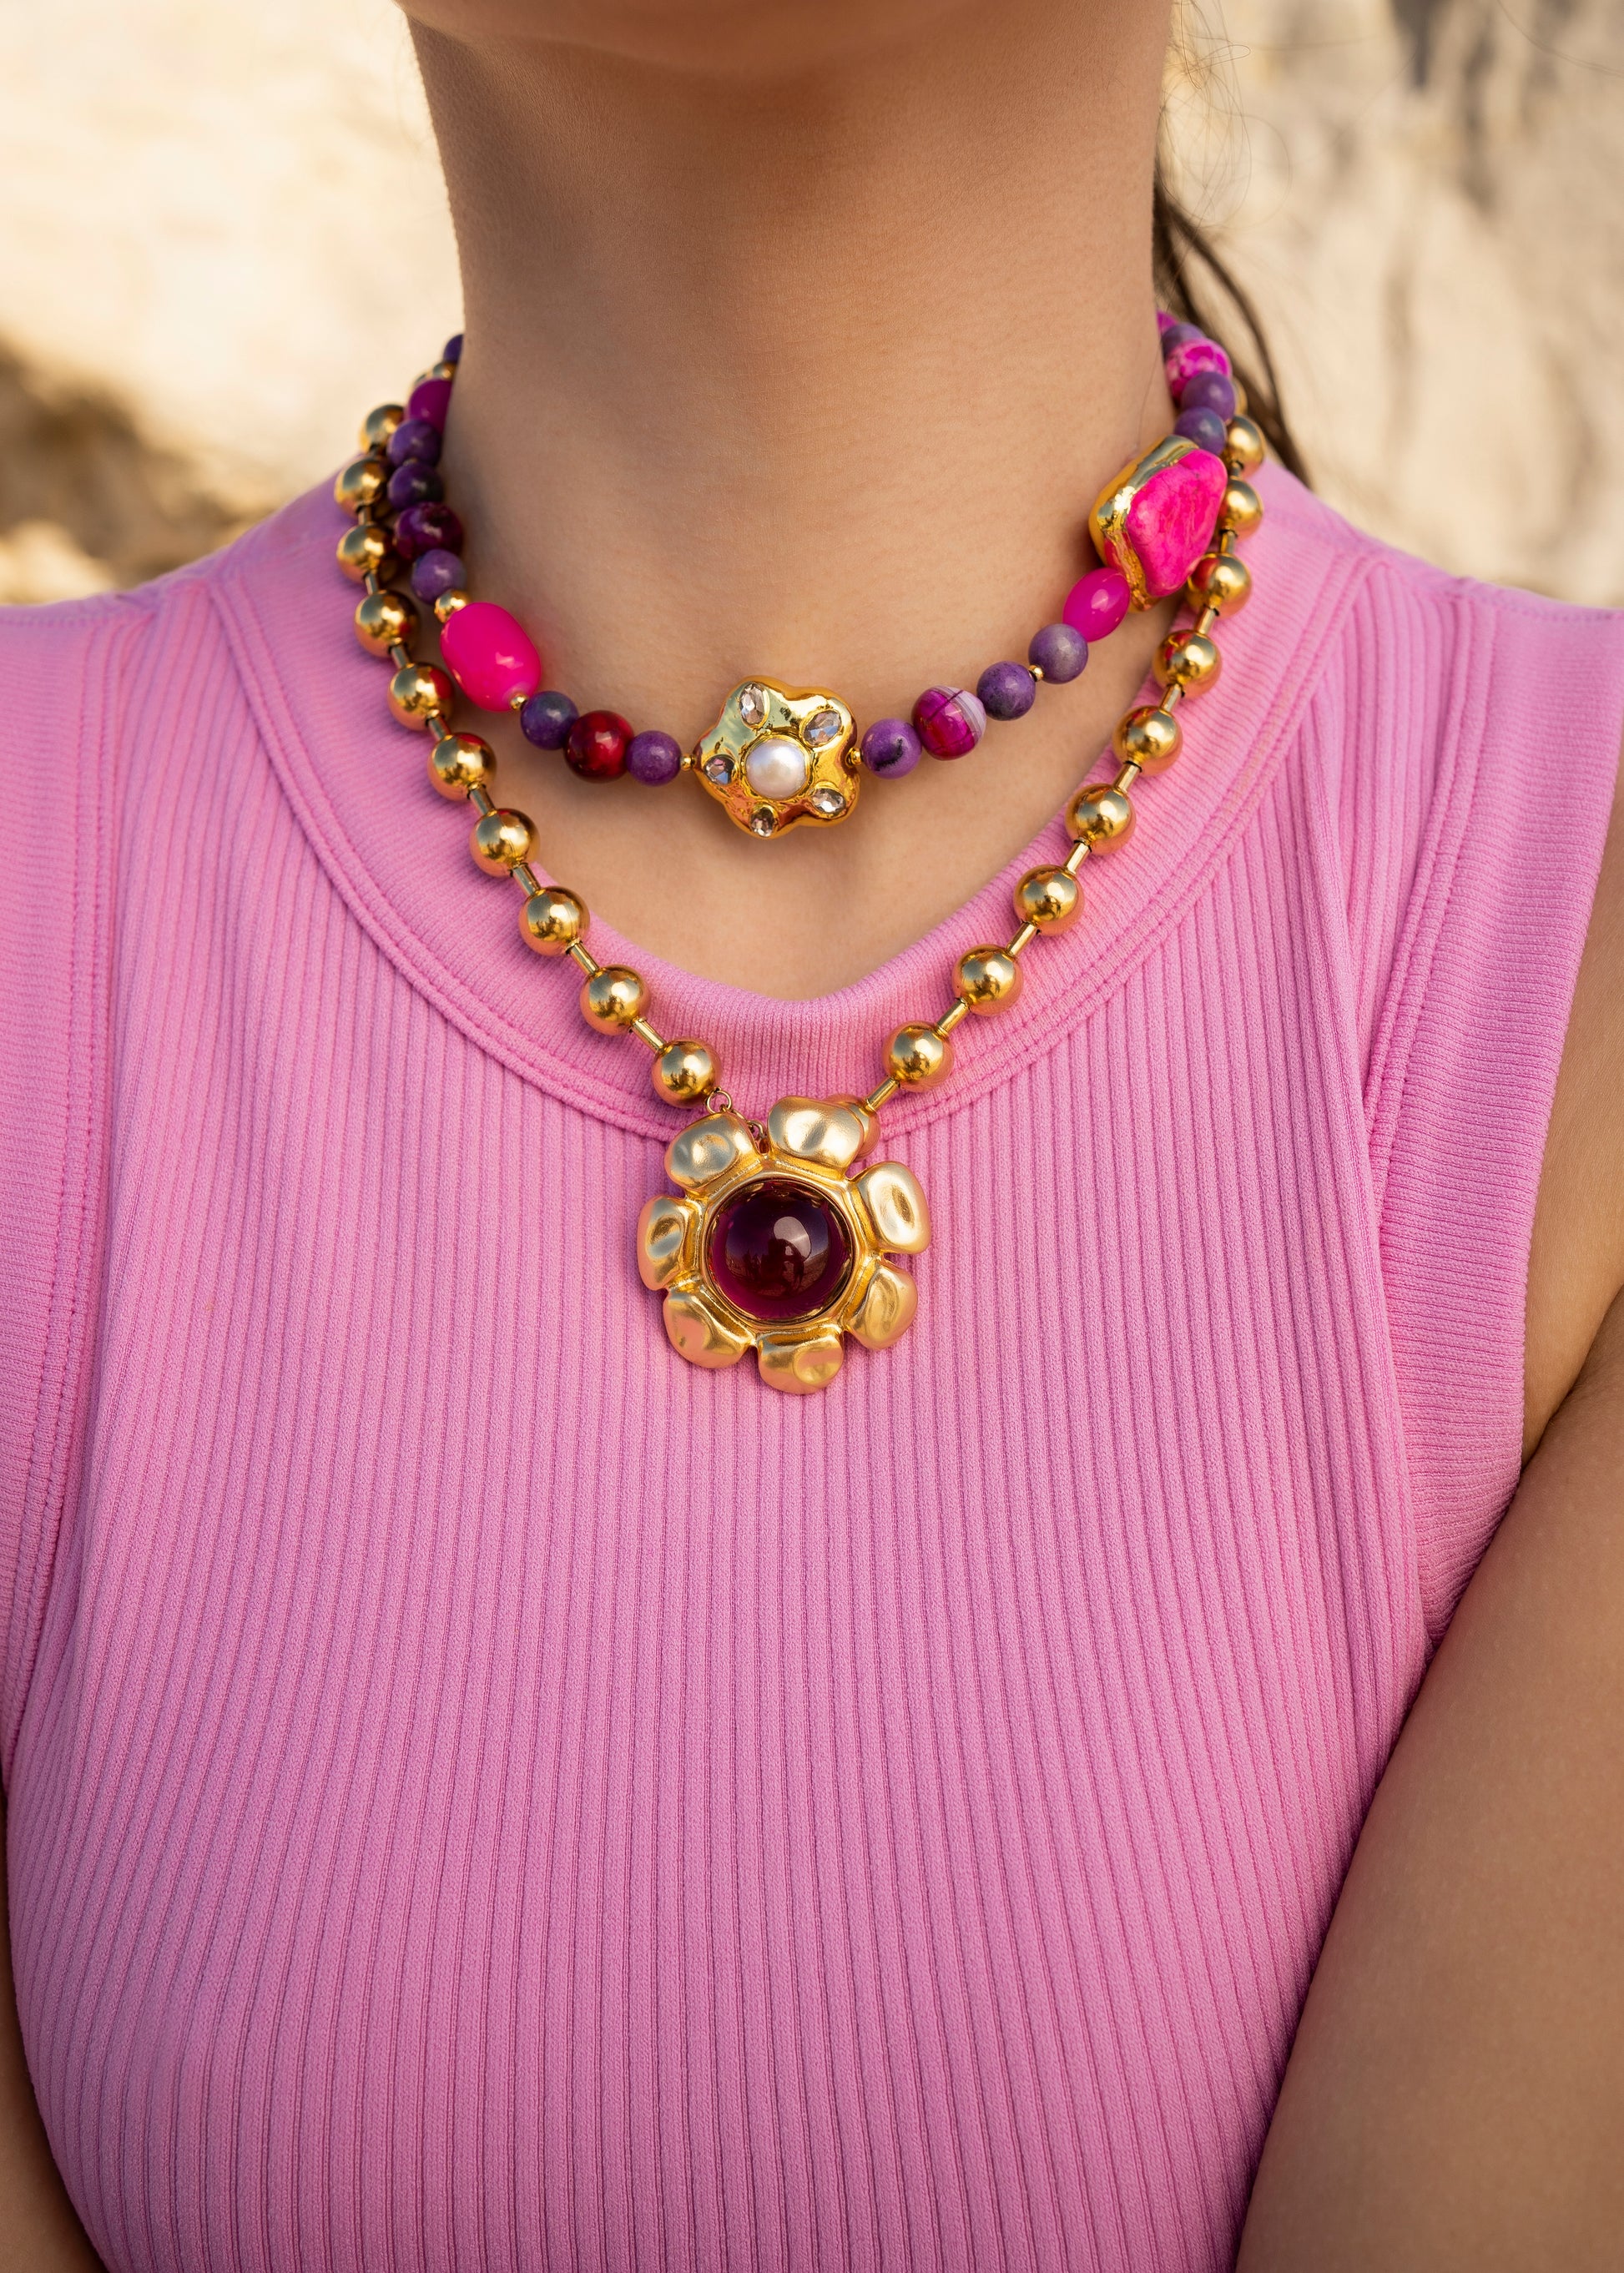 Collares lulas-lulas, combinación de collares morados y dorados,collar y charm en tonos morados, morado y rosa con dorado, joyería creativa, joyas de diseño Lulás_Lulás.